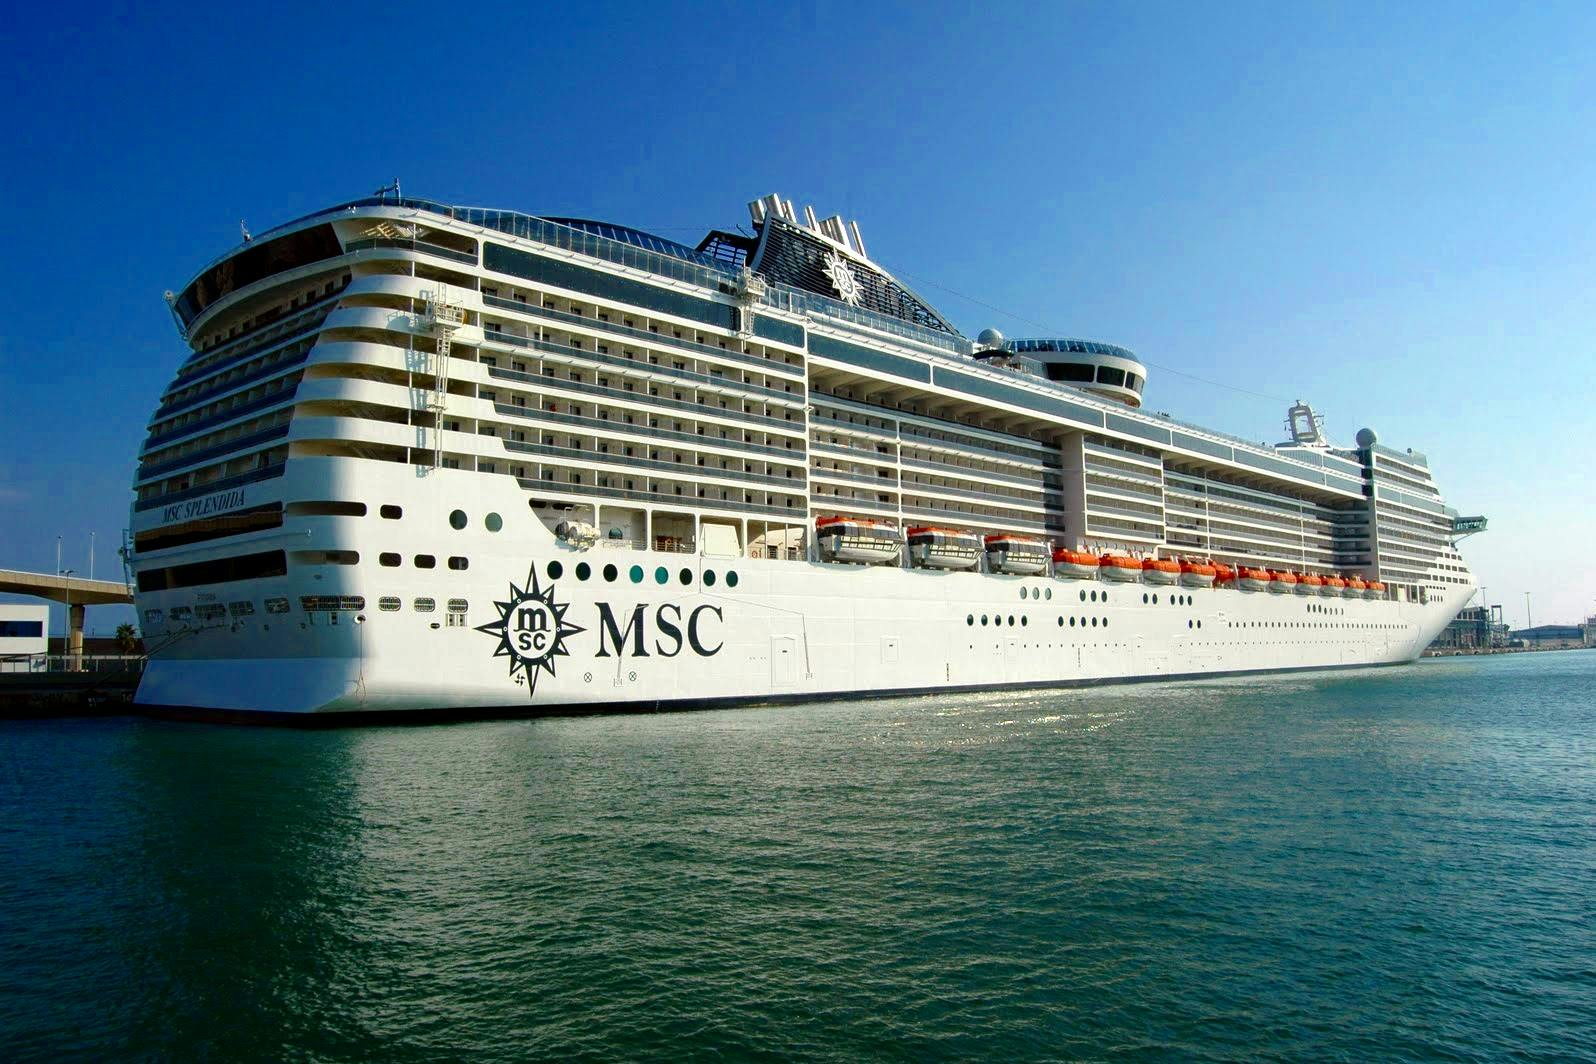 MSC Splendida Cruise Review by elsajenkins November 04, 2022